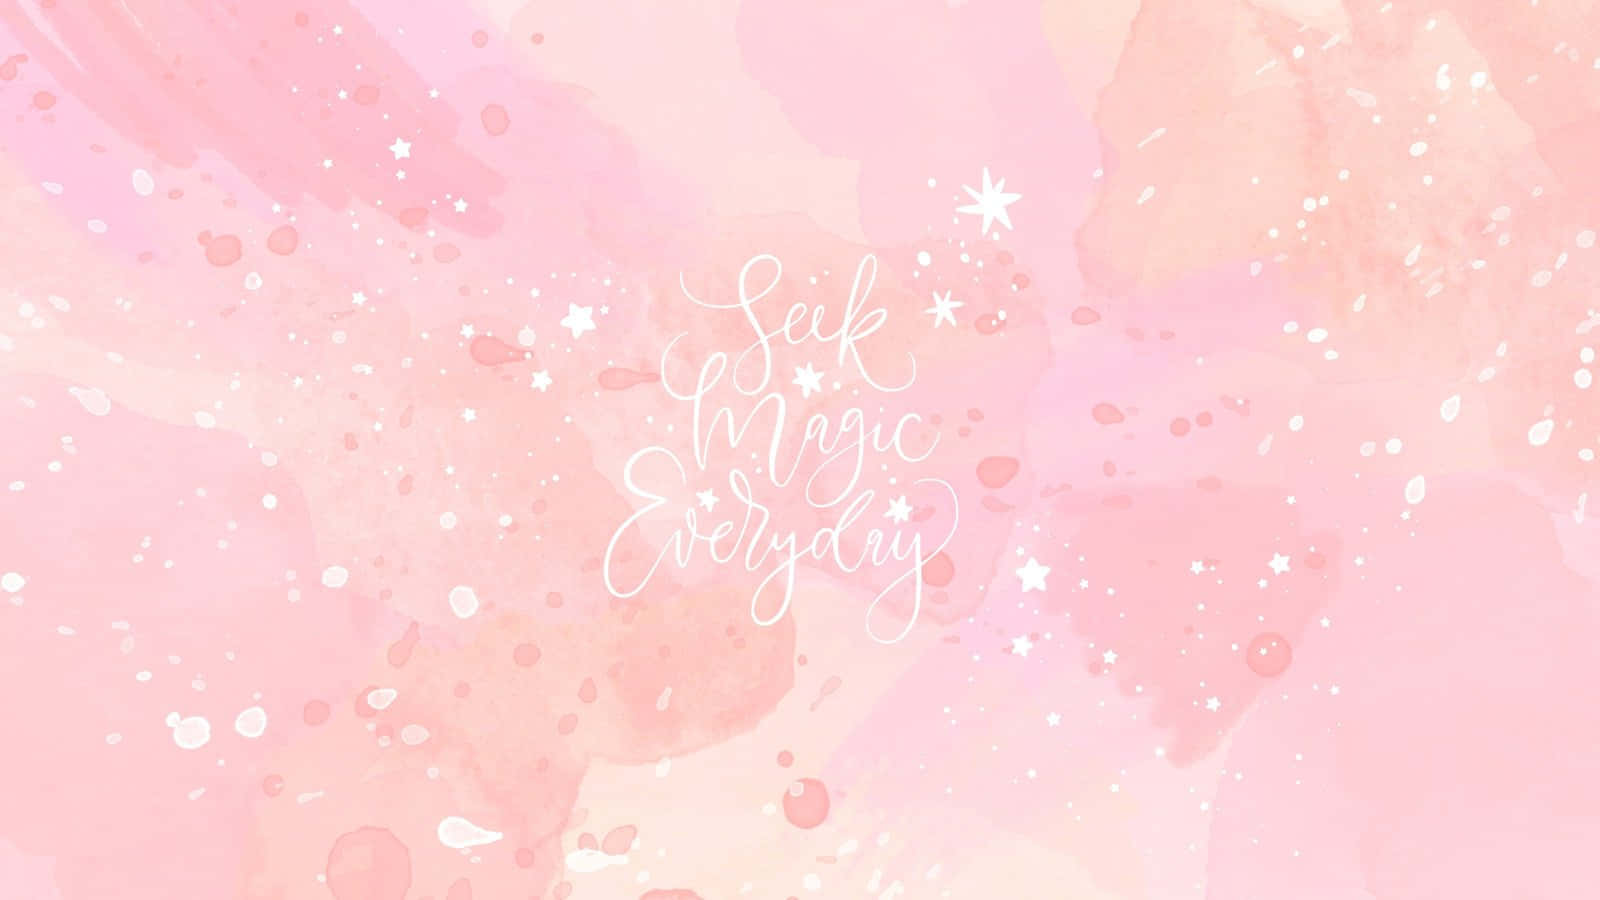 Quote Motivation Desktop Pink Aesthetic Wallpaper